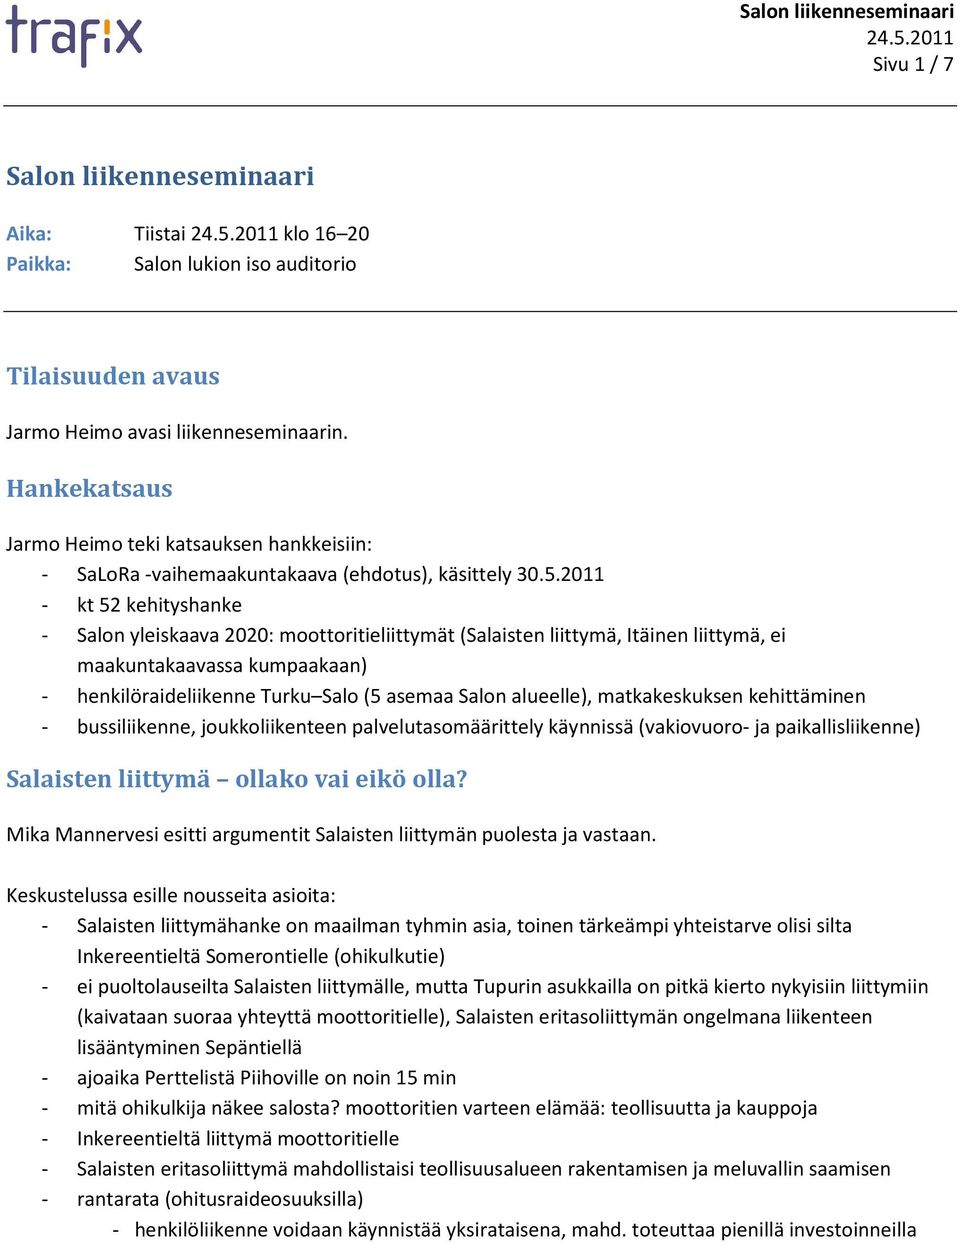 2011 - kt 52 kehityshanke - Salon yleiskaava 2020: moottoritieliittymät (Salaisten liittymä, Itäinen liittymä, ei maakuntakaavassa kumpaakaan) - henkilöraideliikenne Turku Salo (5 asemaa Salon